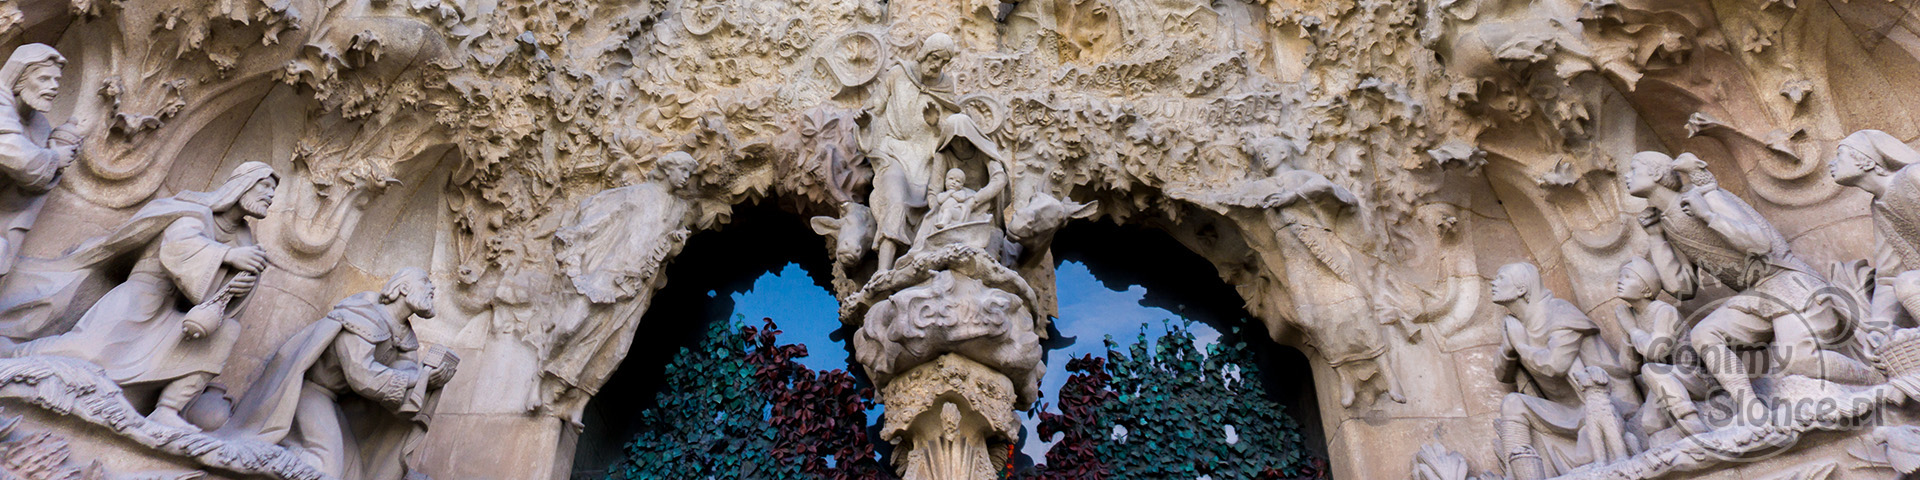 Sagrada Familia - zdobienia nad drzwiami